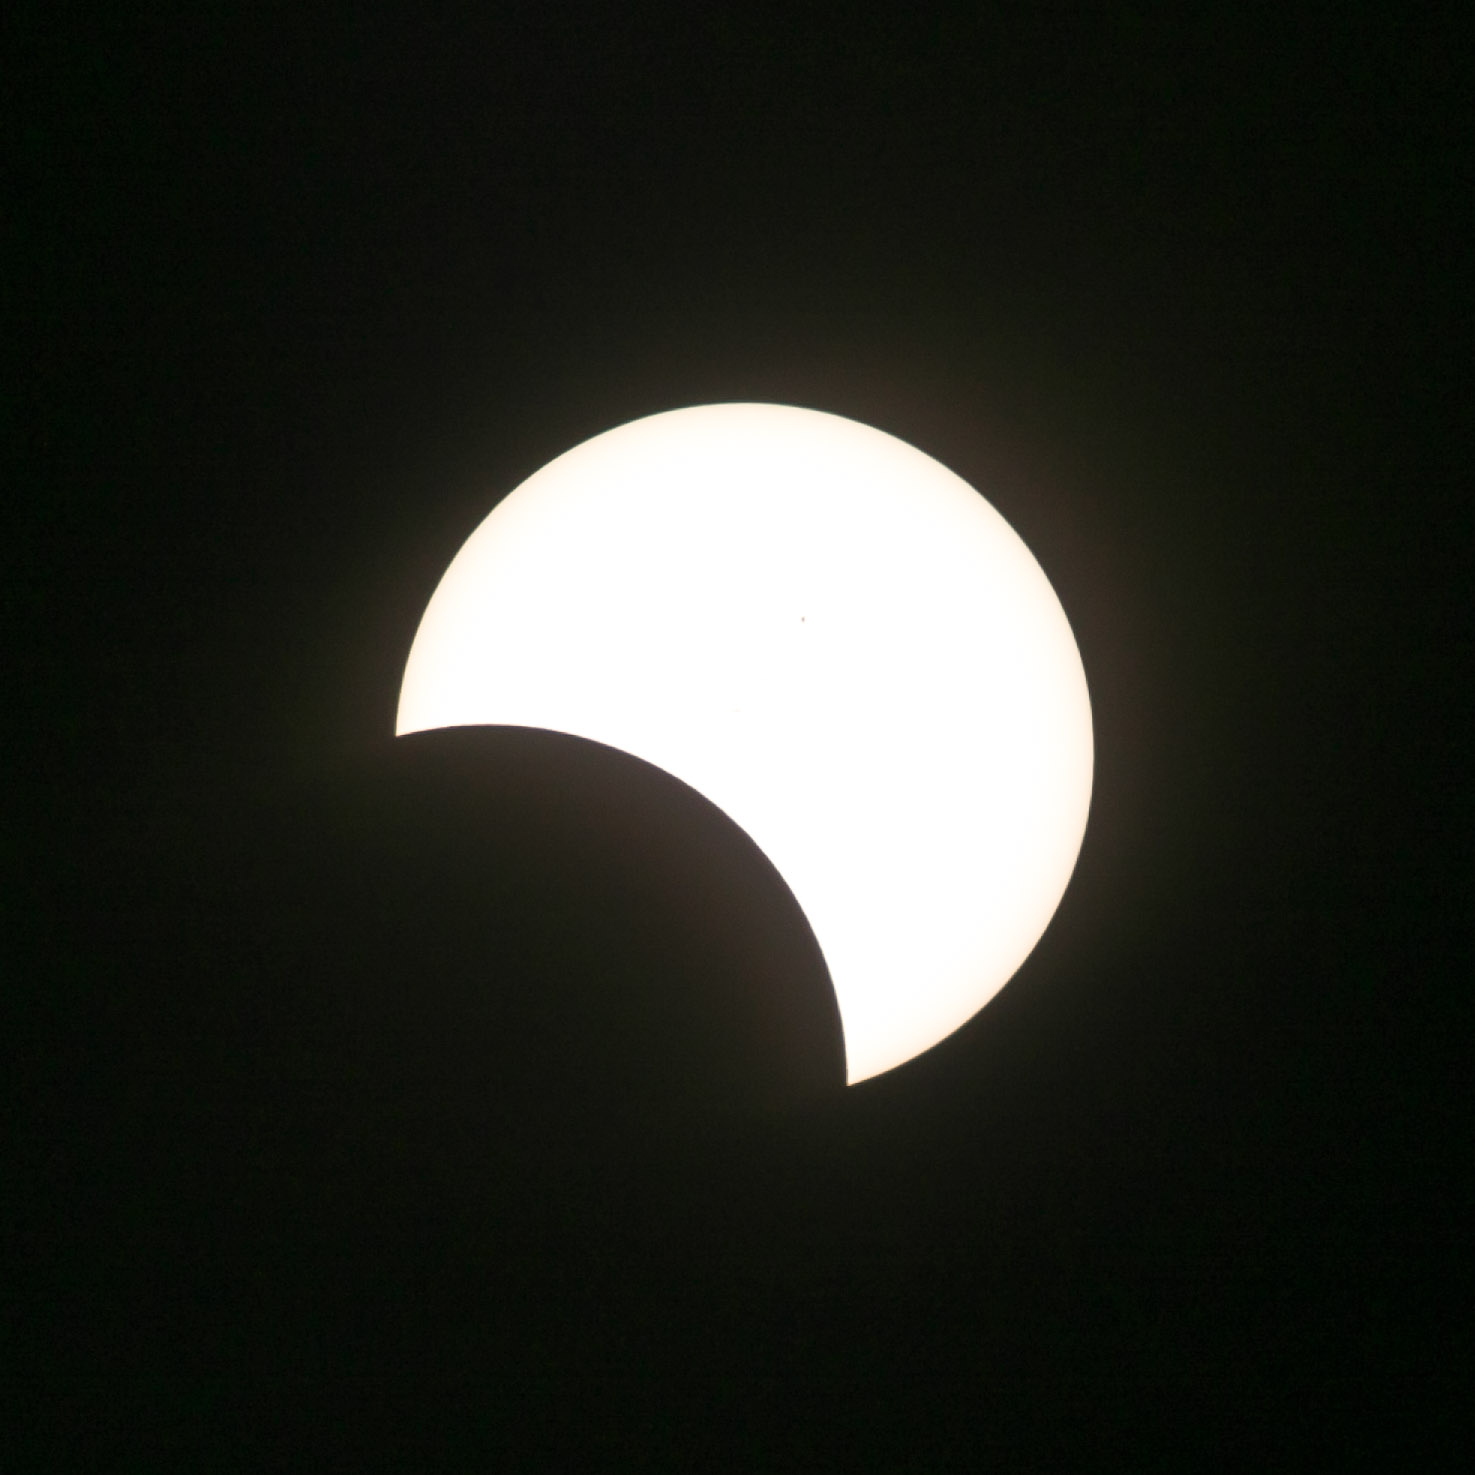 Partial, 2017 Total Solar Eclipse